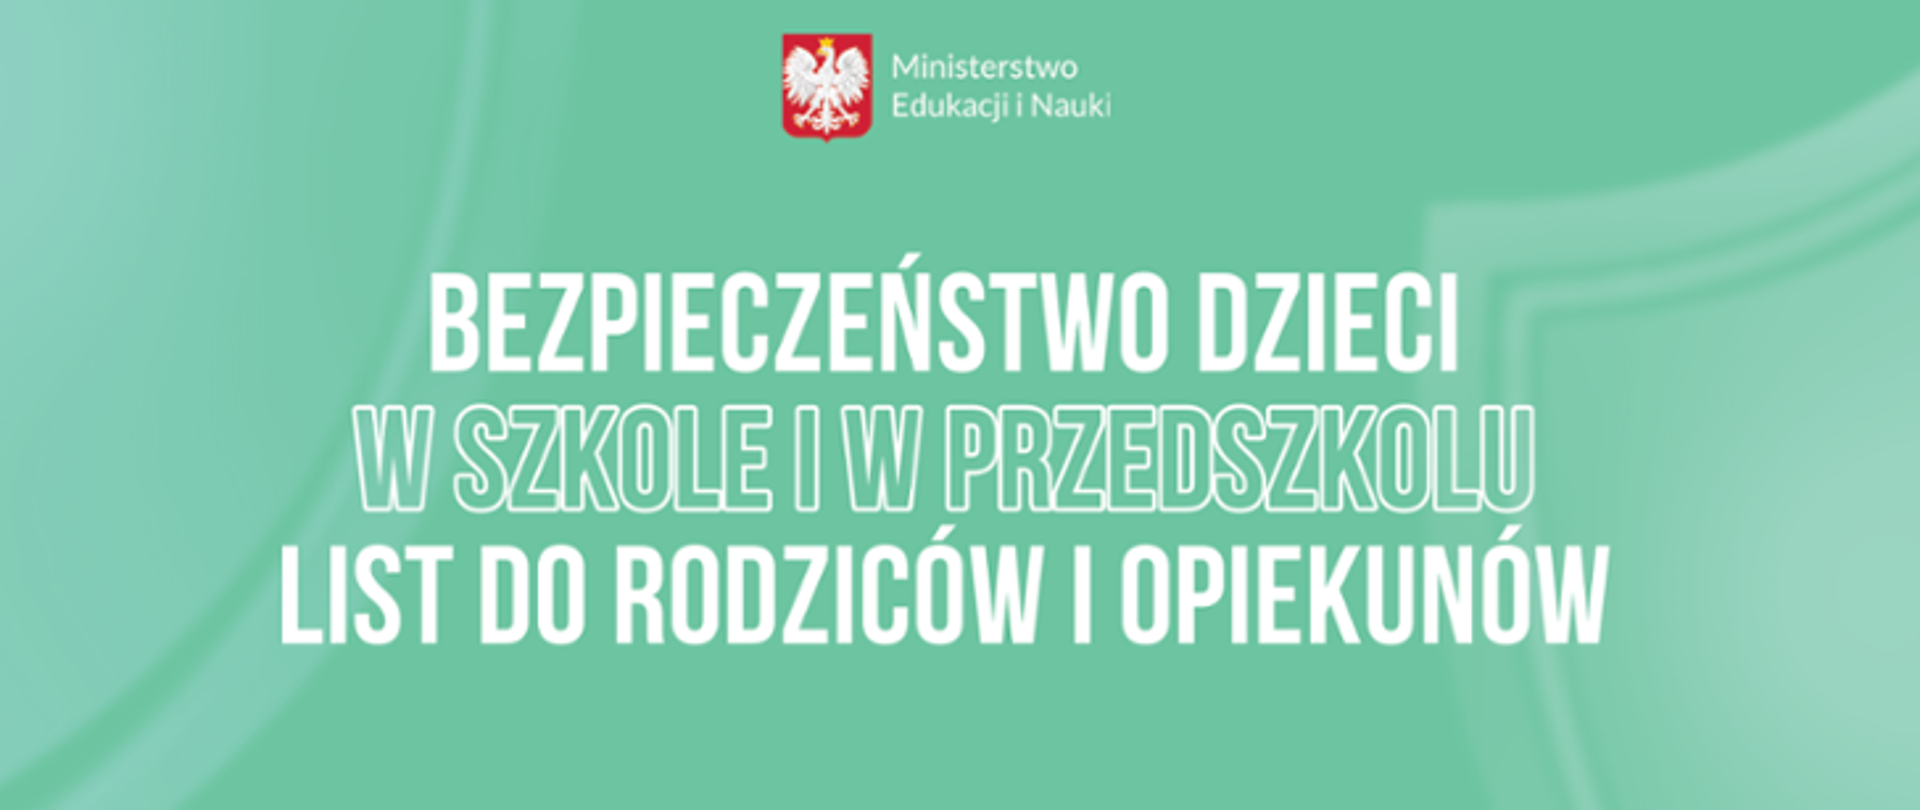 Na górze grafiki znajduje się godło Polski a po jego prawej stronie napis: Ministerstwo Edukacji i Nauki. Poniżej jest napisane: BEZPIECZEŃSTWO DZIECI W SZKOLE I W PRZEDSZKOLU LIST DO RODZICÓW I OPIEKUNÓW. Tło jest zielone.